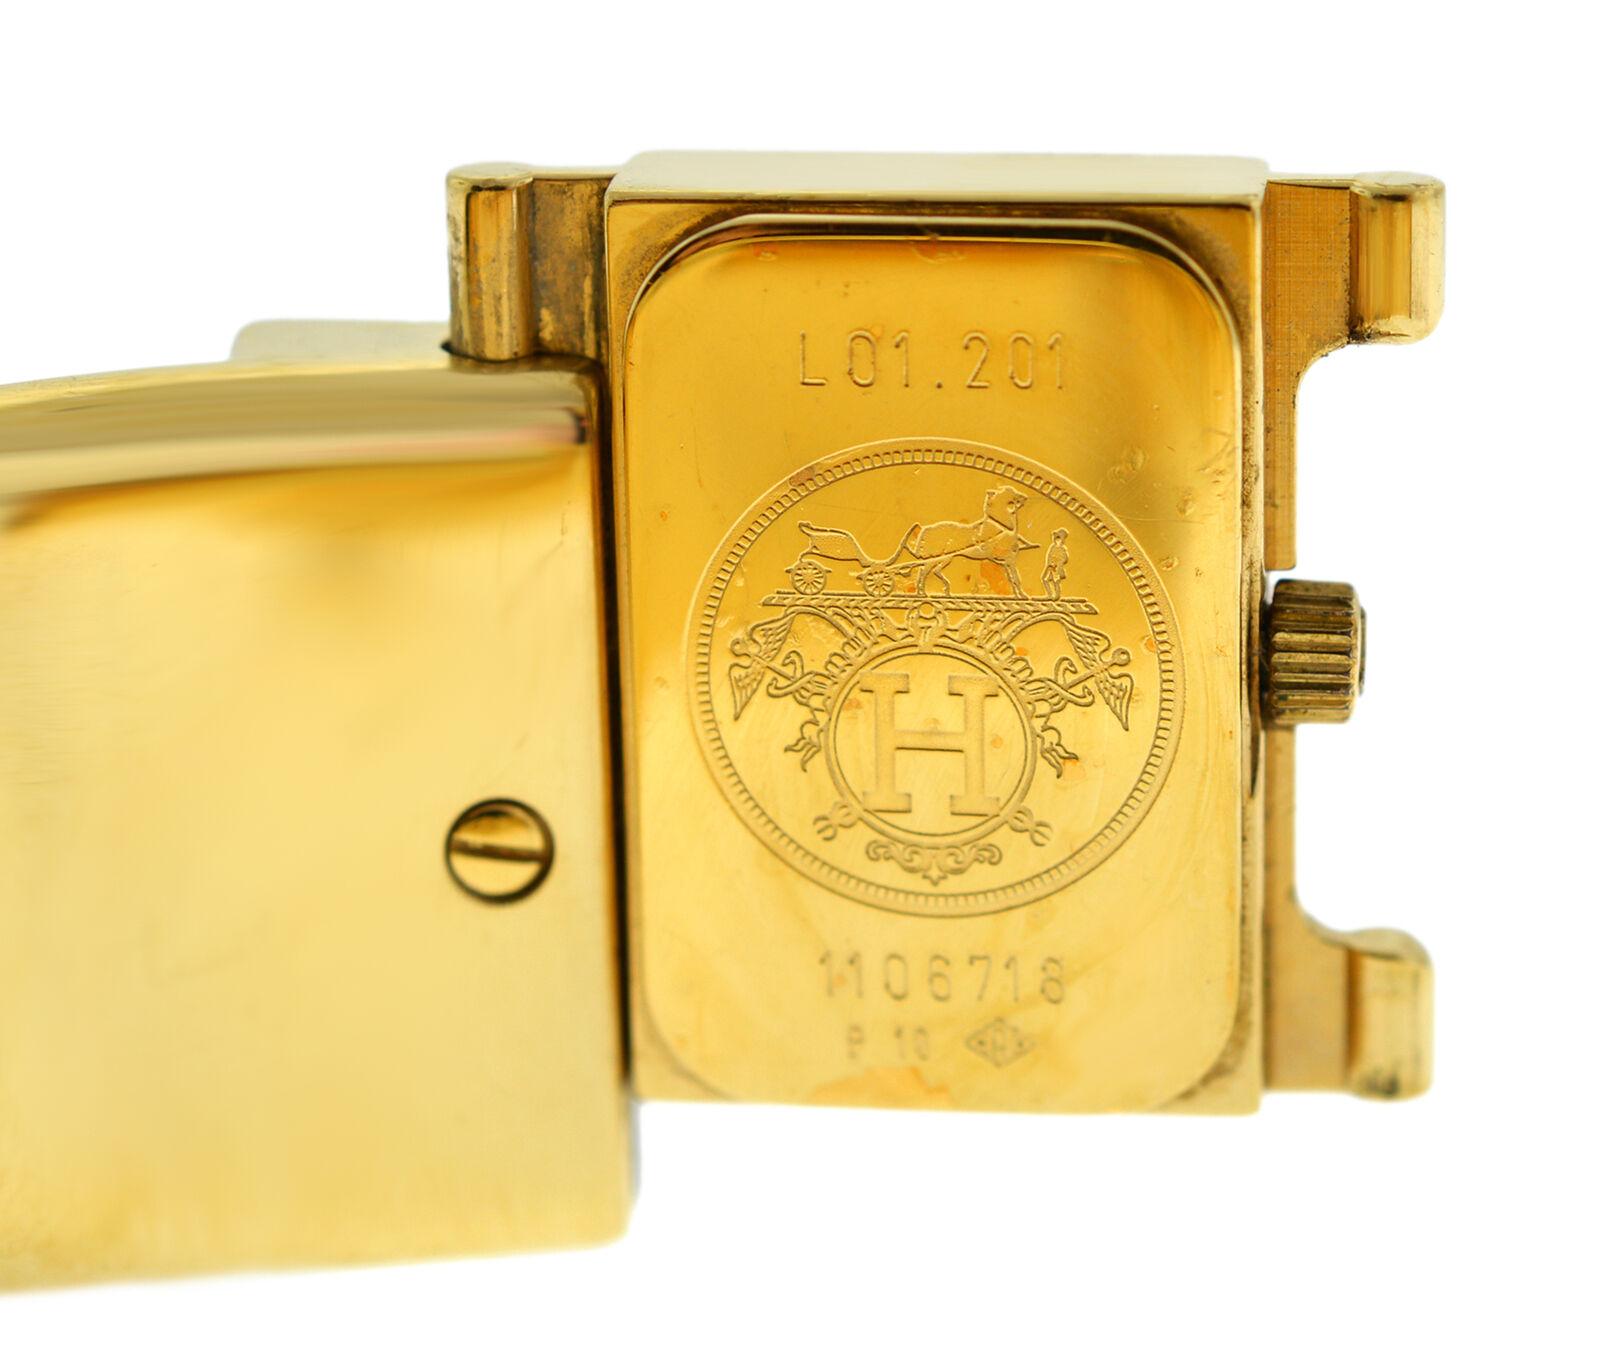 Hermes Paris Loquet L01.201 Gold-Plated Bracelet Quartz Watch For Sale 4